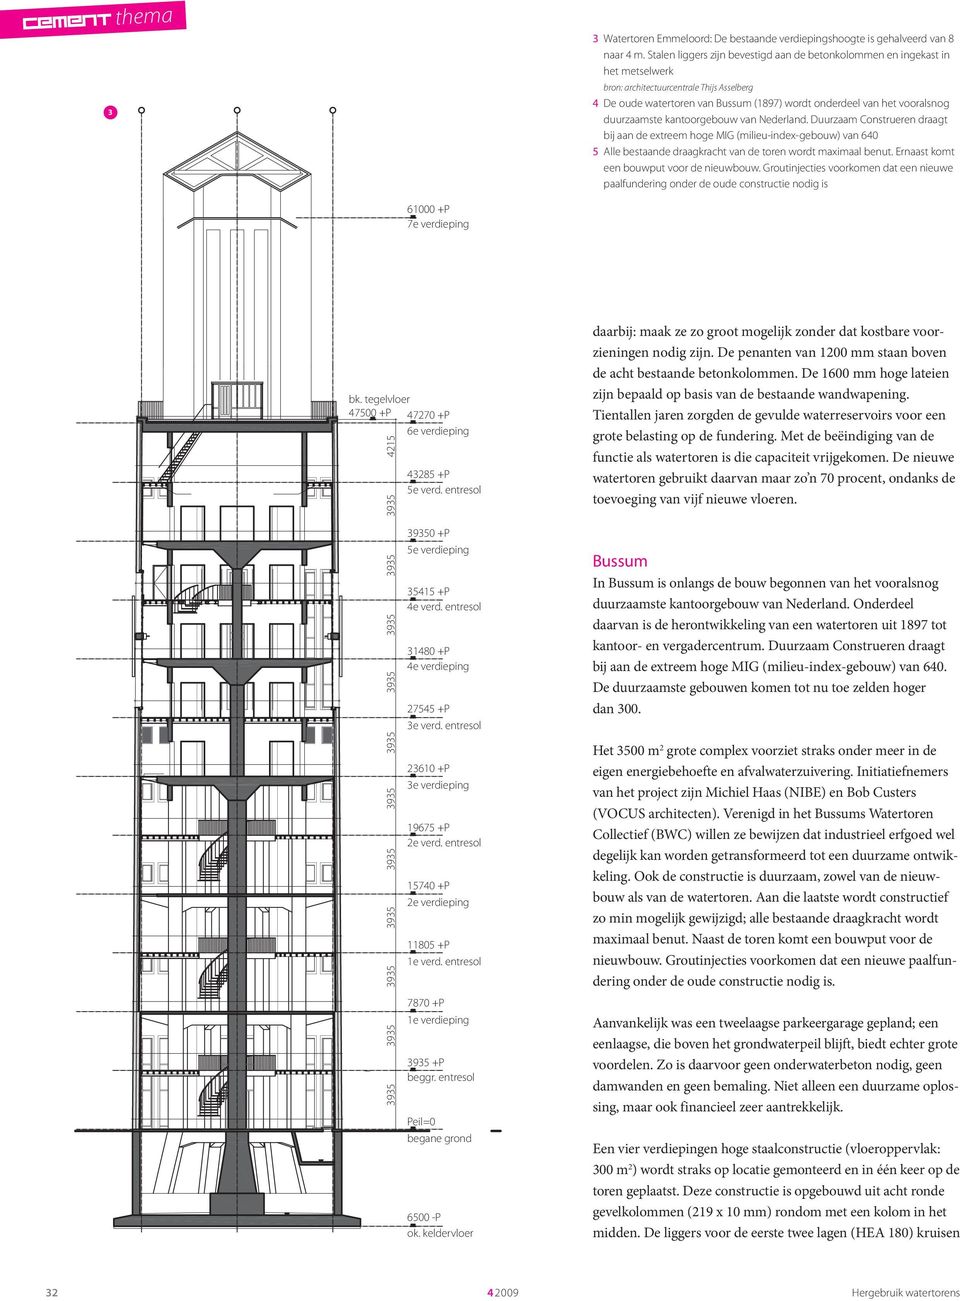 duurzaamste kantoorgebouw van Nederland. Duurzaam Construeren draagt bij aan de extreem hoge MIG (milieu-index-gebouw) van 640 5 Alle bestaande draagkracht van de toren wordt maximaal benut.